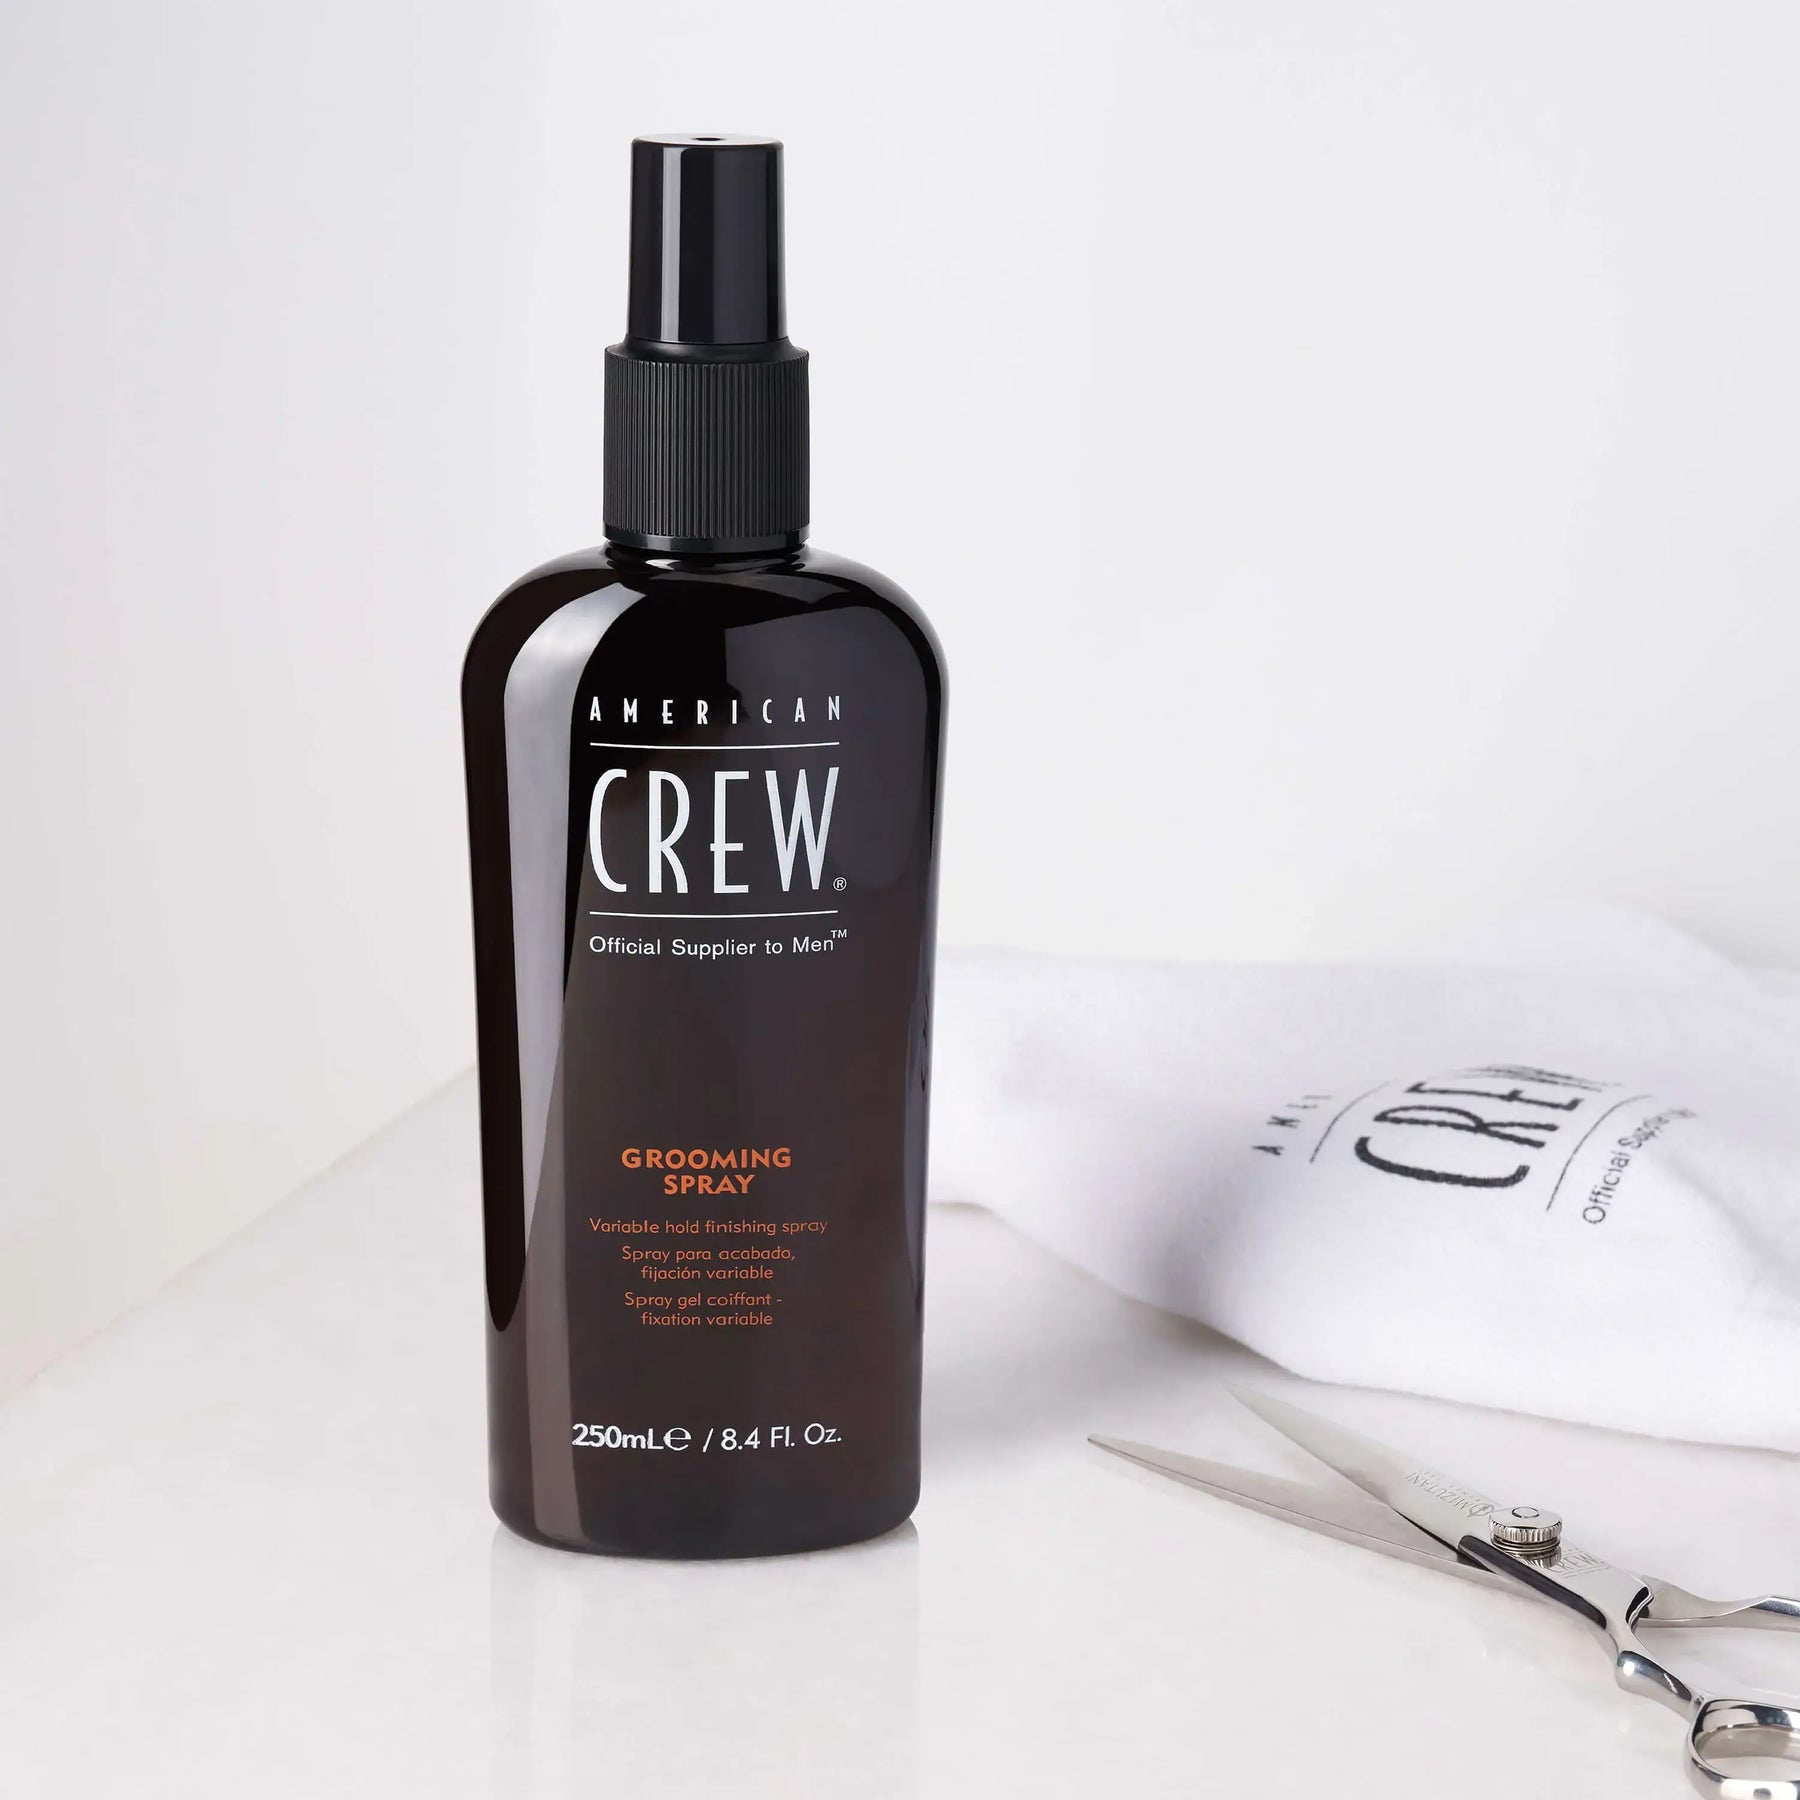 Grooming Spray - Men\'s Hair Styling - American Crew